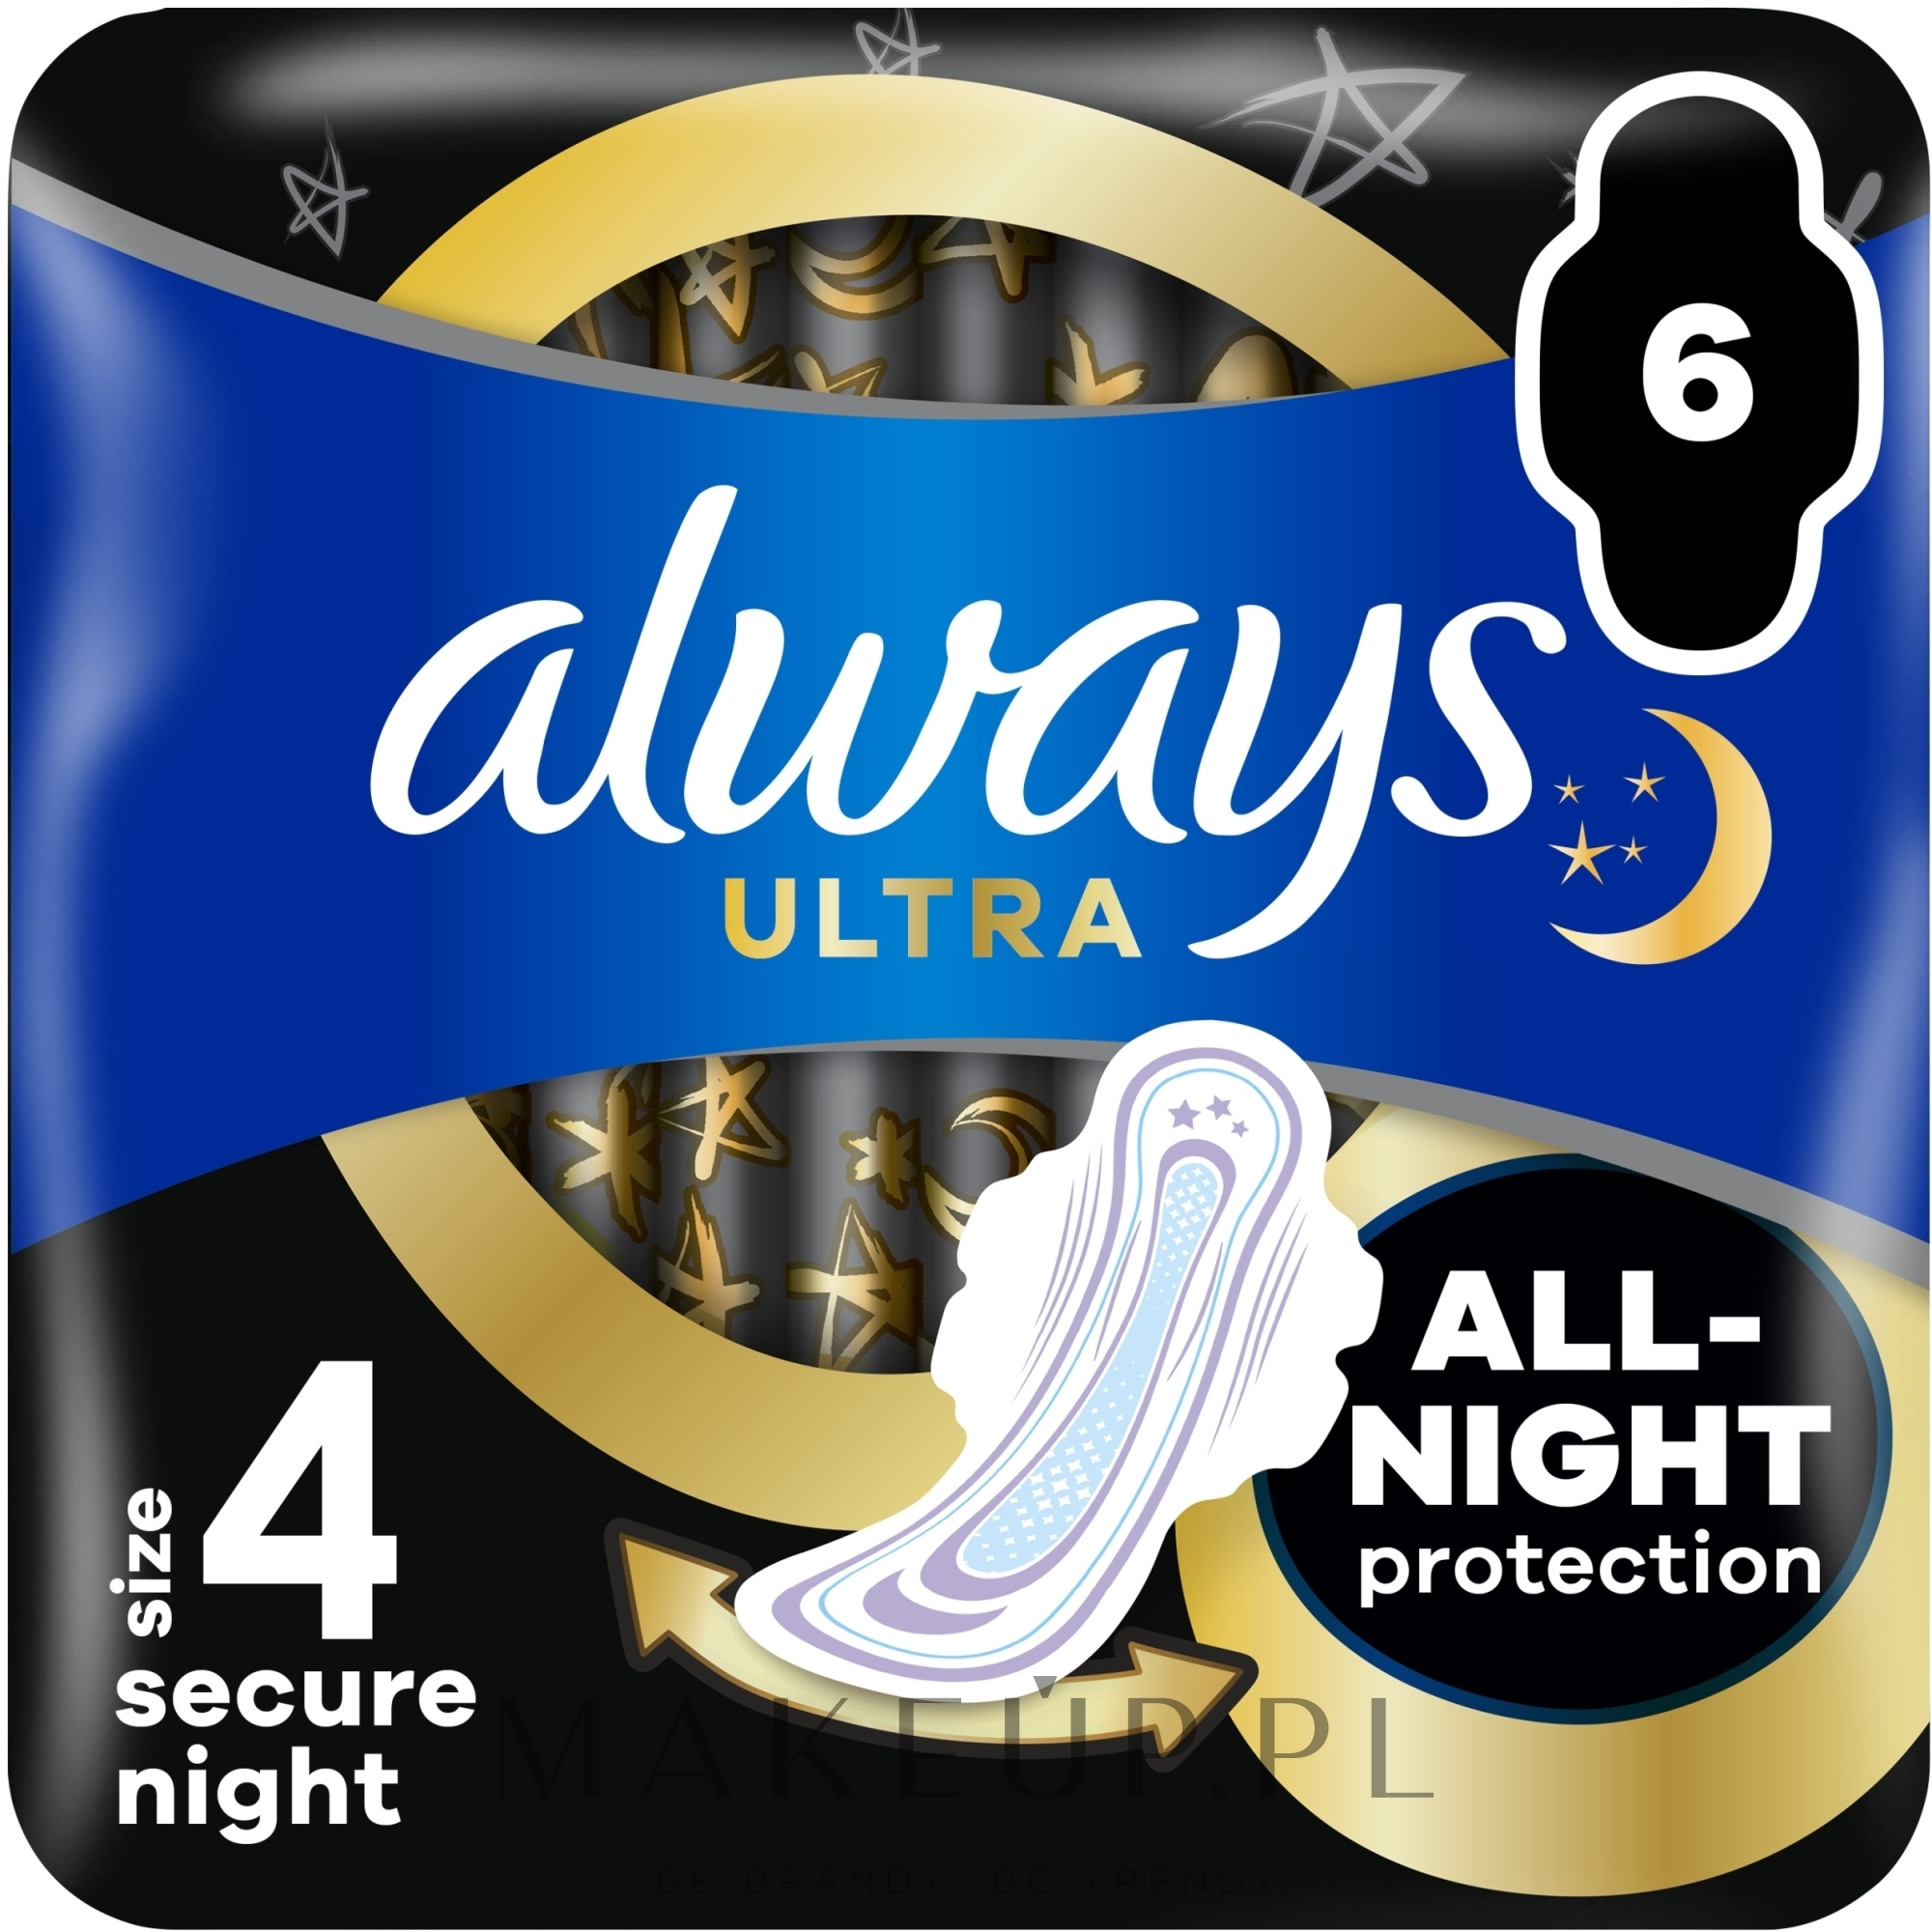 Podpaski rozmiar 4, 6 szt. - Always Ultra Secure Night — Zdjęcie 6 szt.